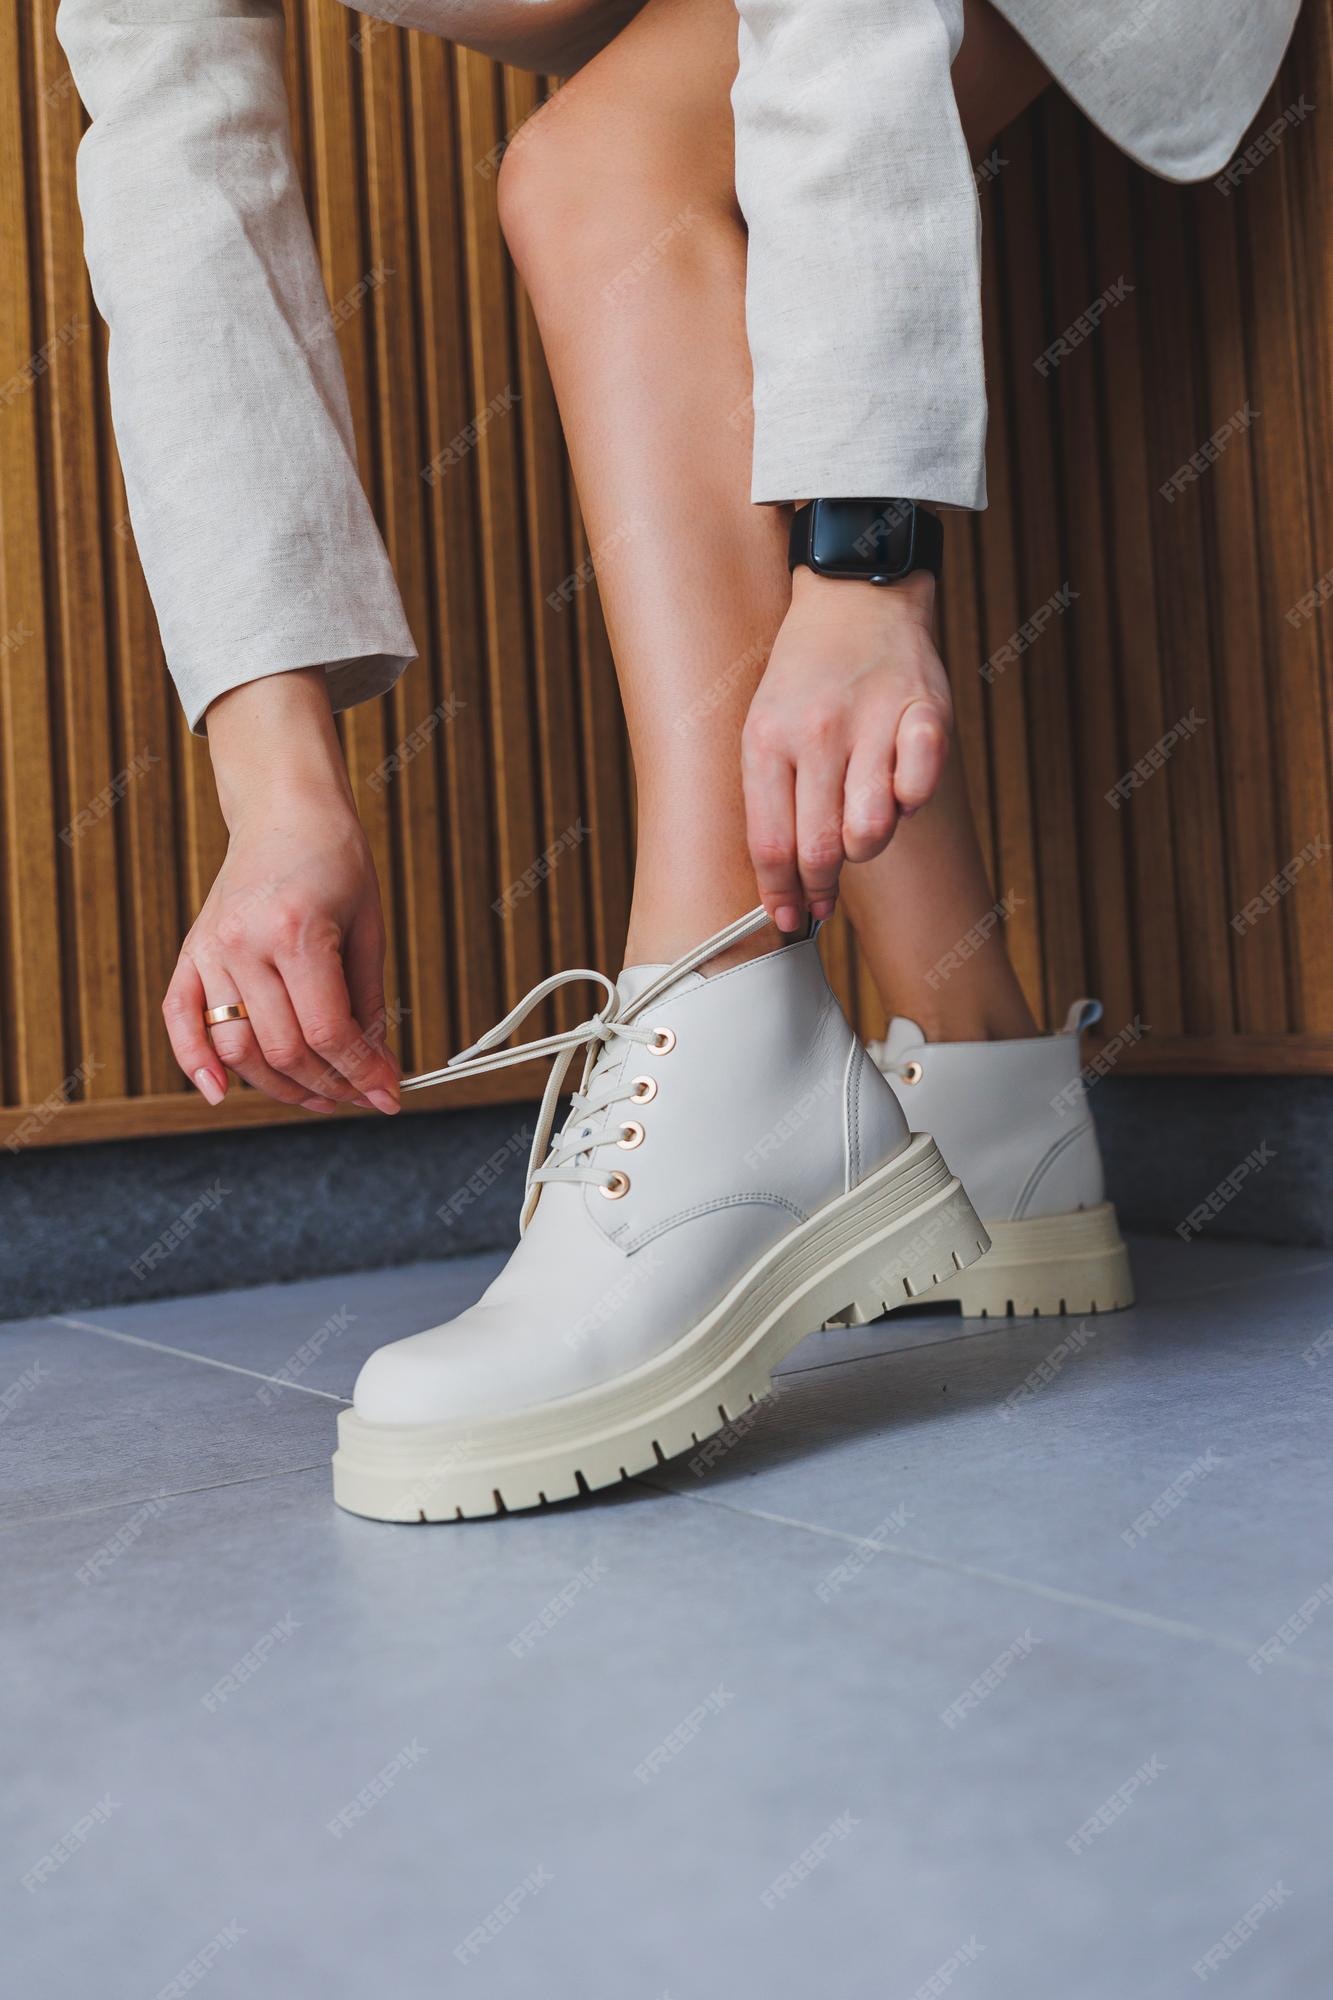 Zapatos mujer con piernas delgadas estilo de moda color beige tendencias de instagram estilo casual nueva colección de zapatos para mujer | Foto Premium